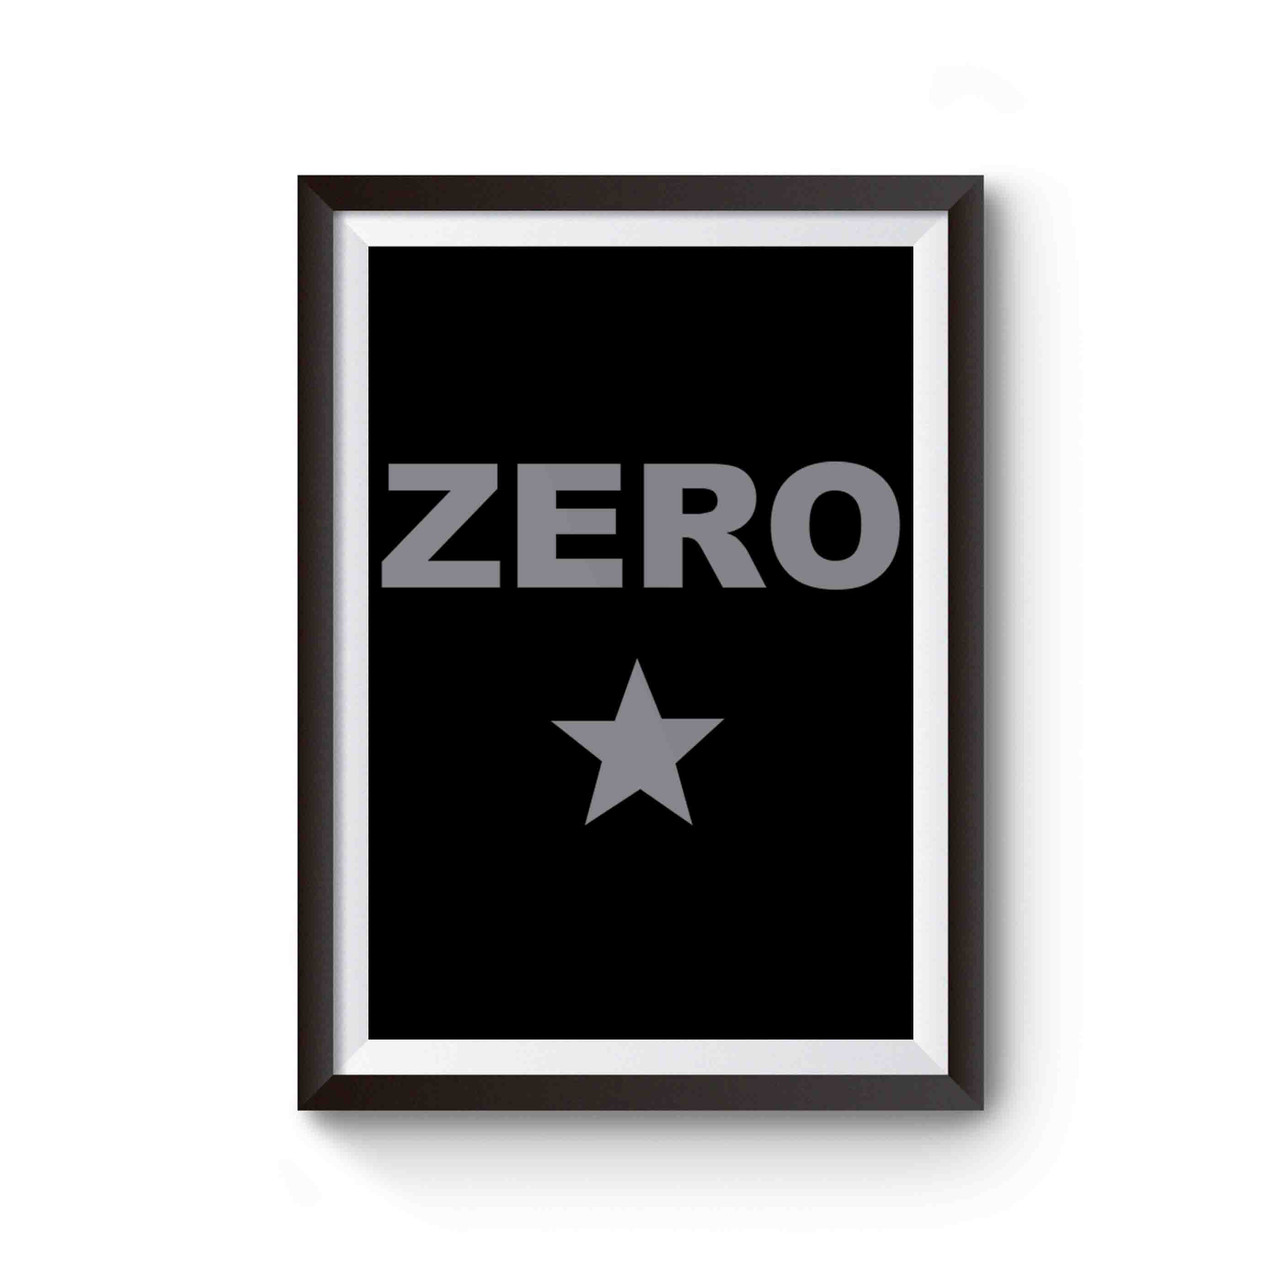 smashing pumpkins zero logo